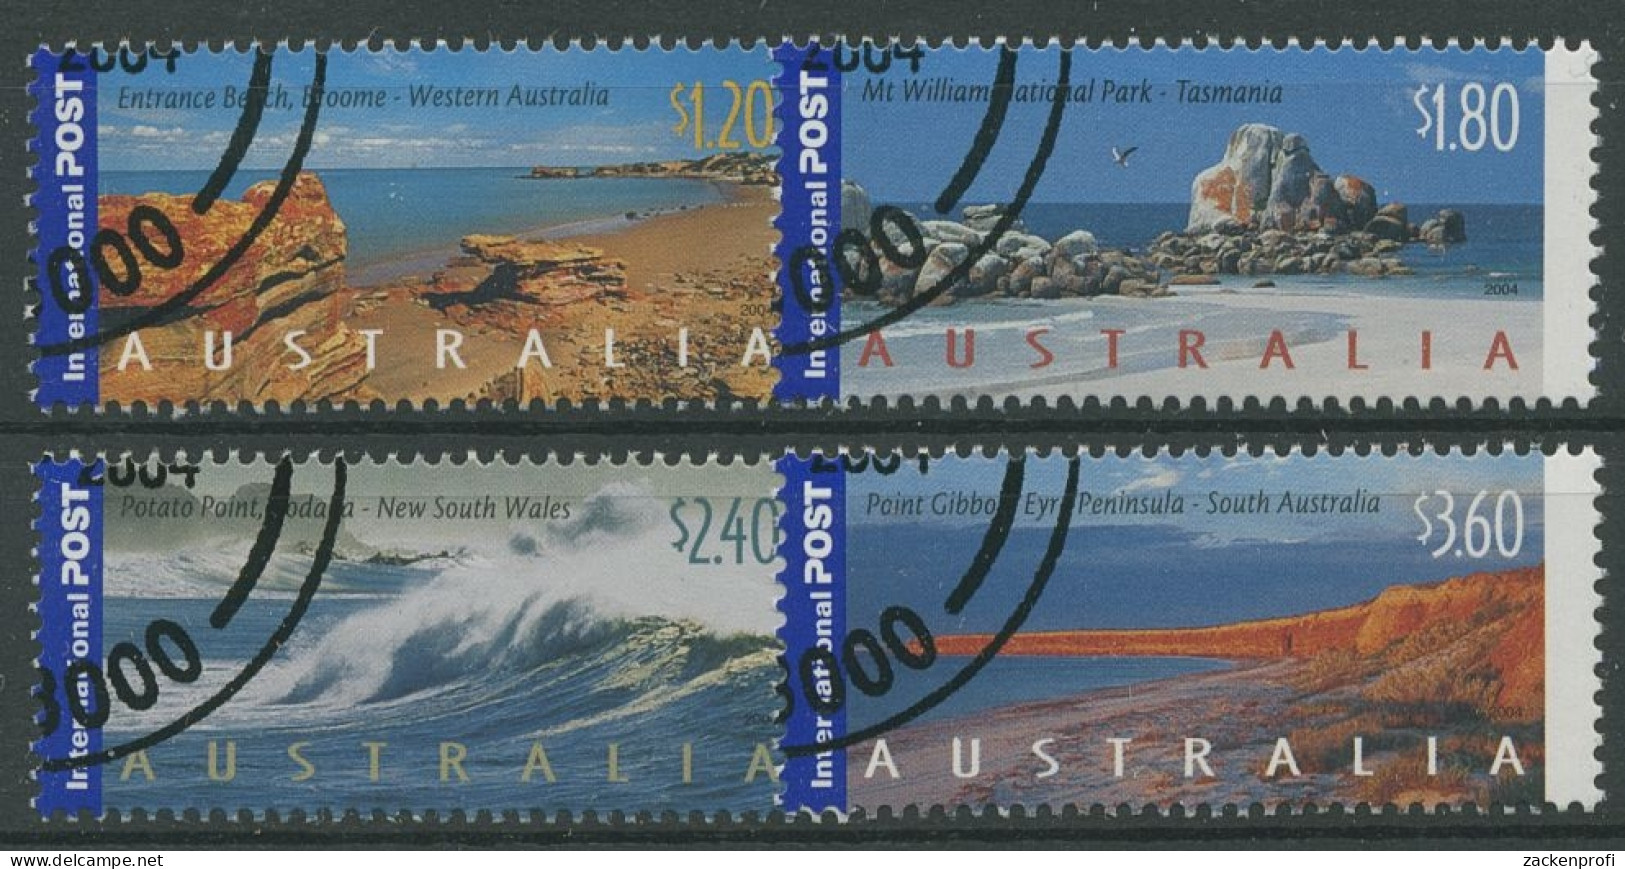 Australien 2004 Sehenswürdigkeit. U. Landschaften Australiens 2352/55 Gestempelt - Used Stamps